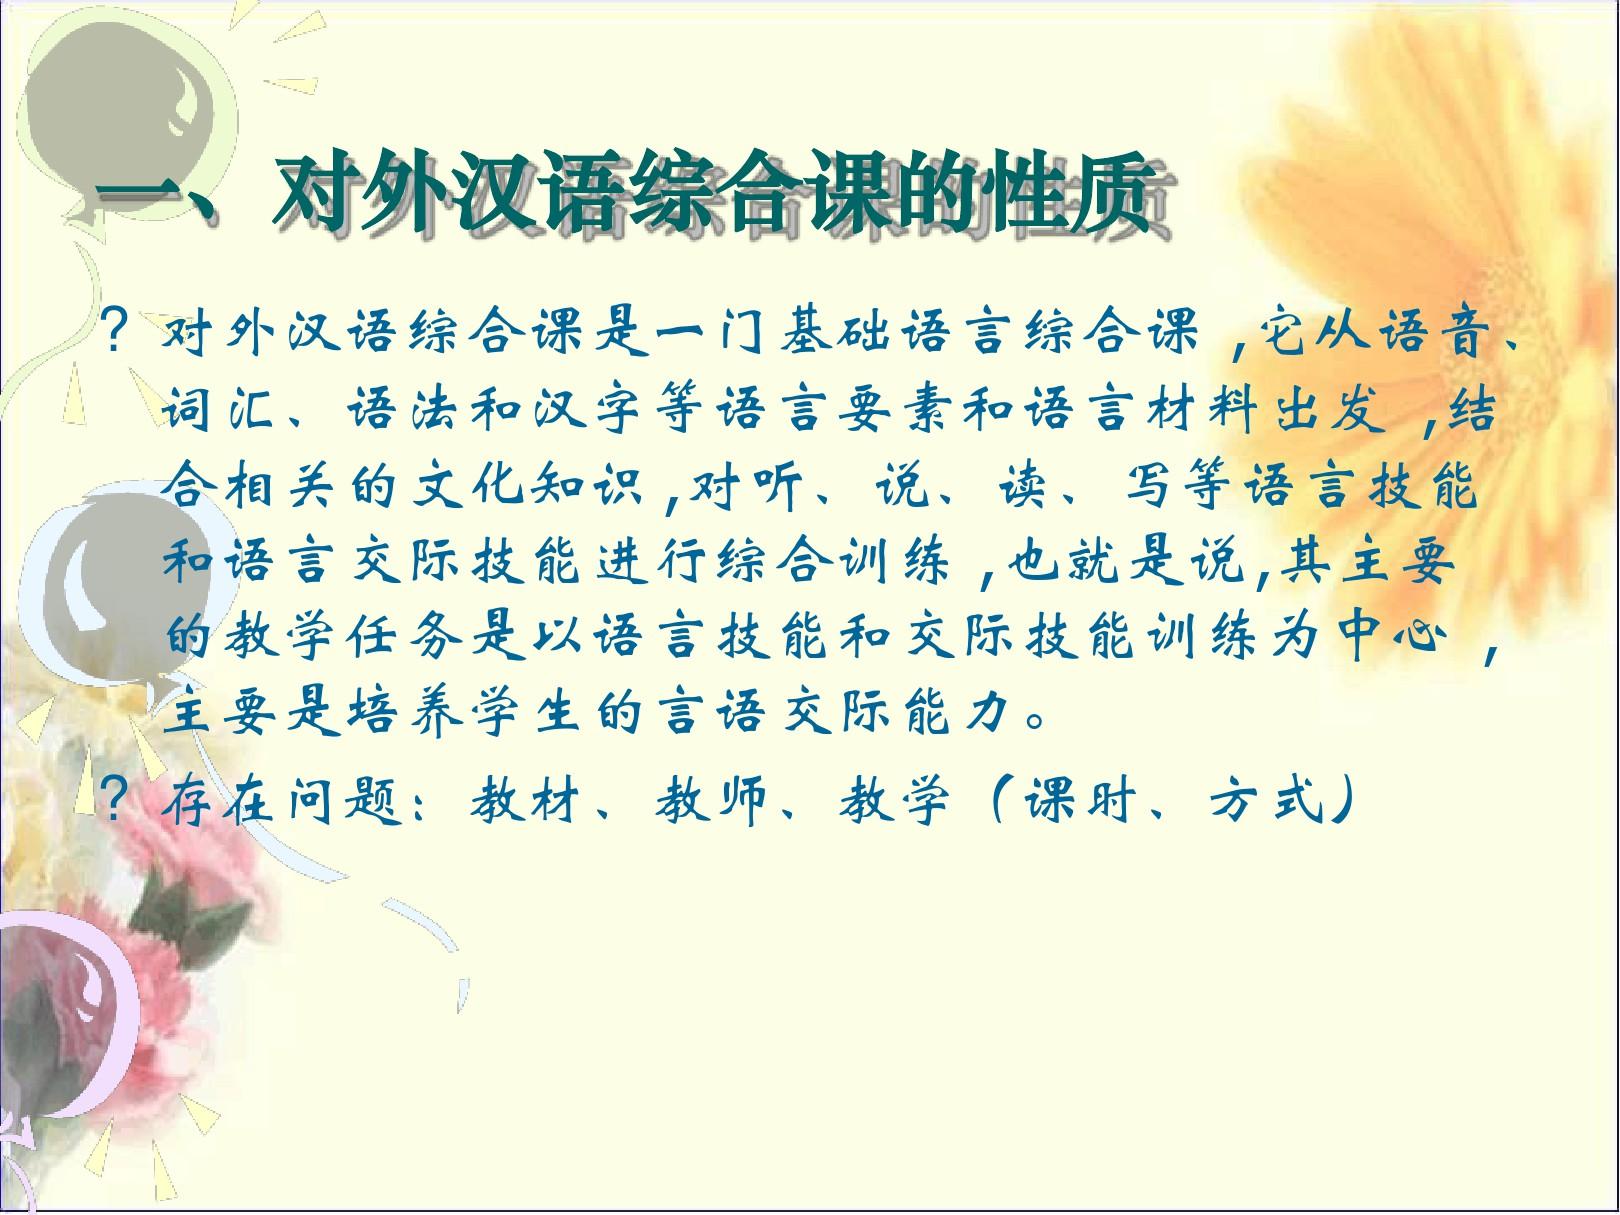 对外汉语教学法第三章对外汉语教学主要课型教学